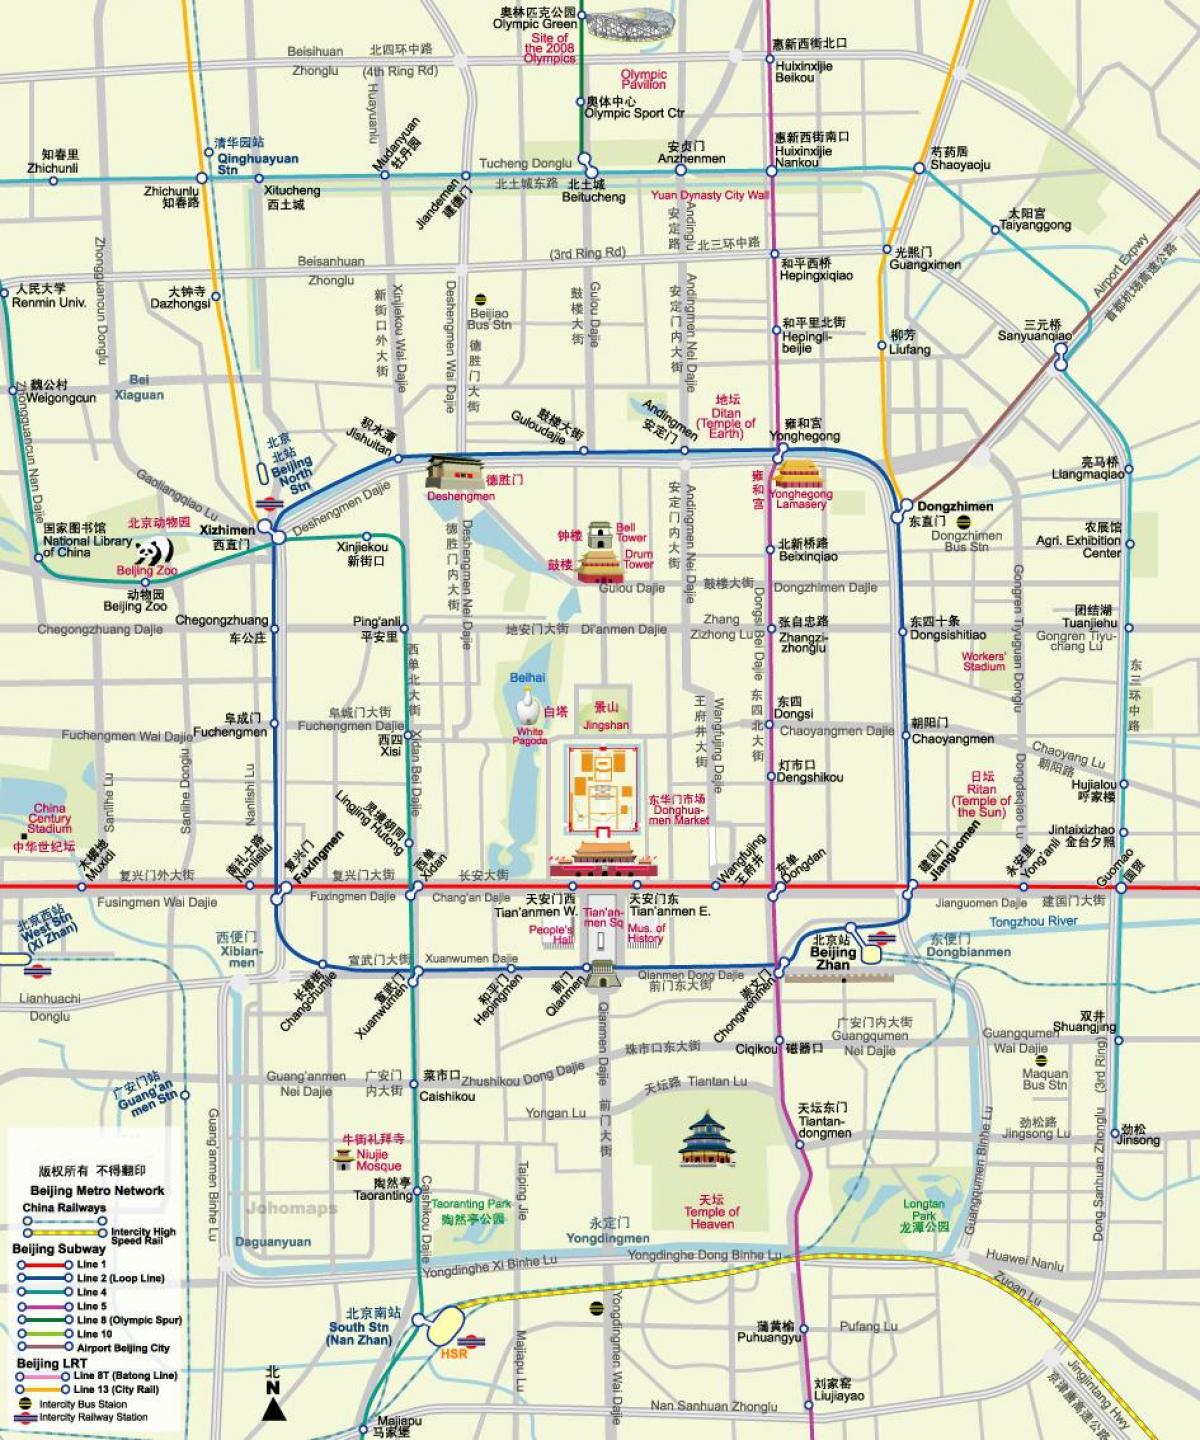 מפה של מפת הרכבת התחתית של בייג ' ינג עם אטרקציות תיירותיות